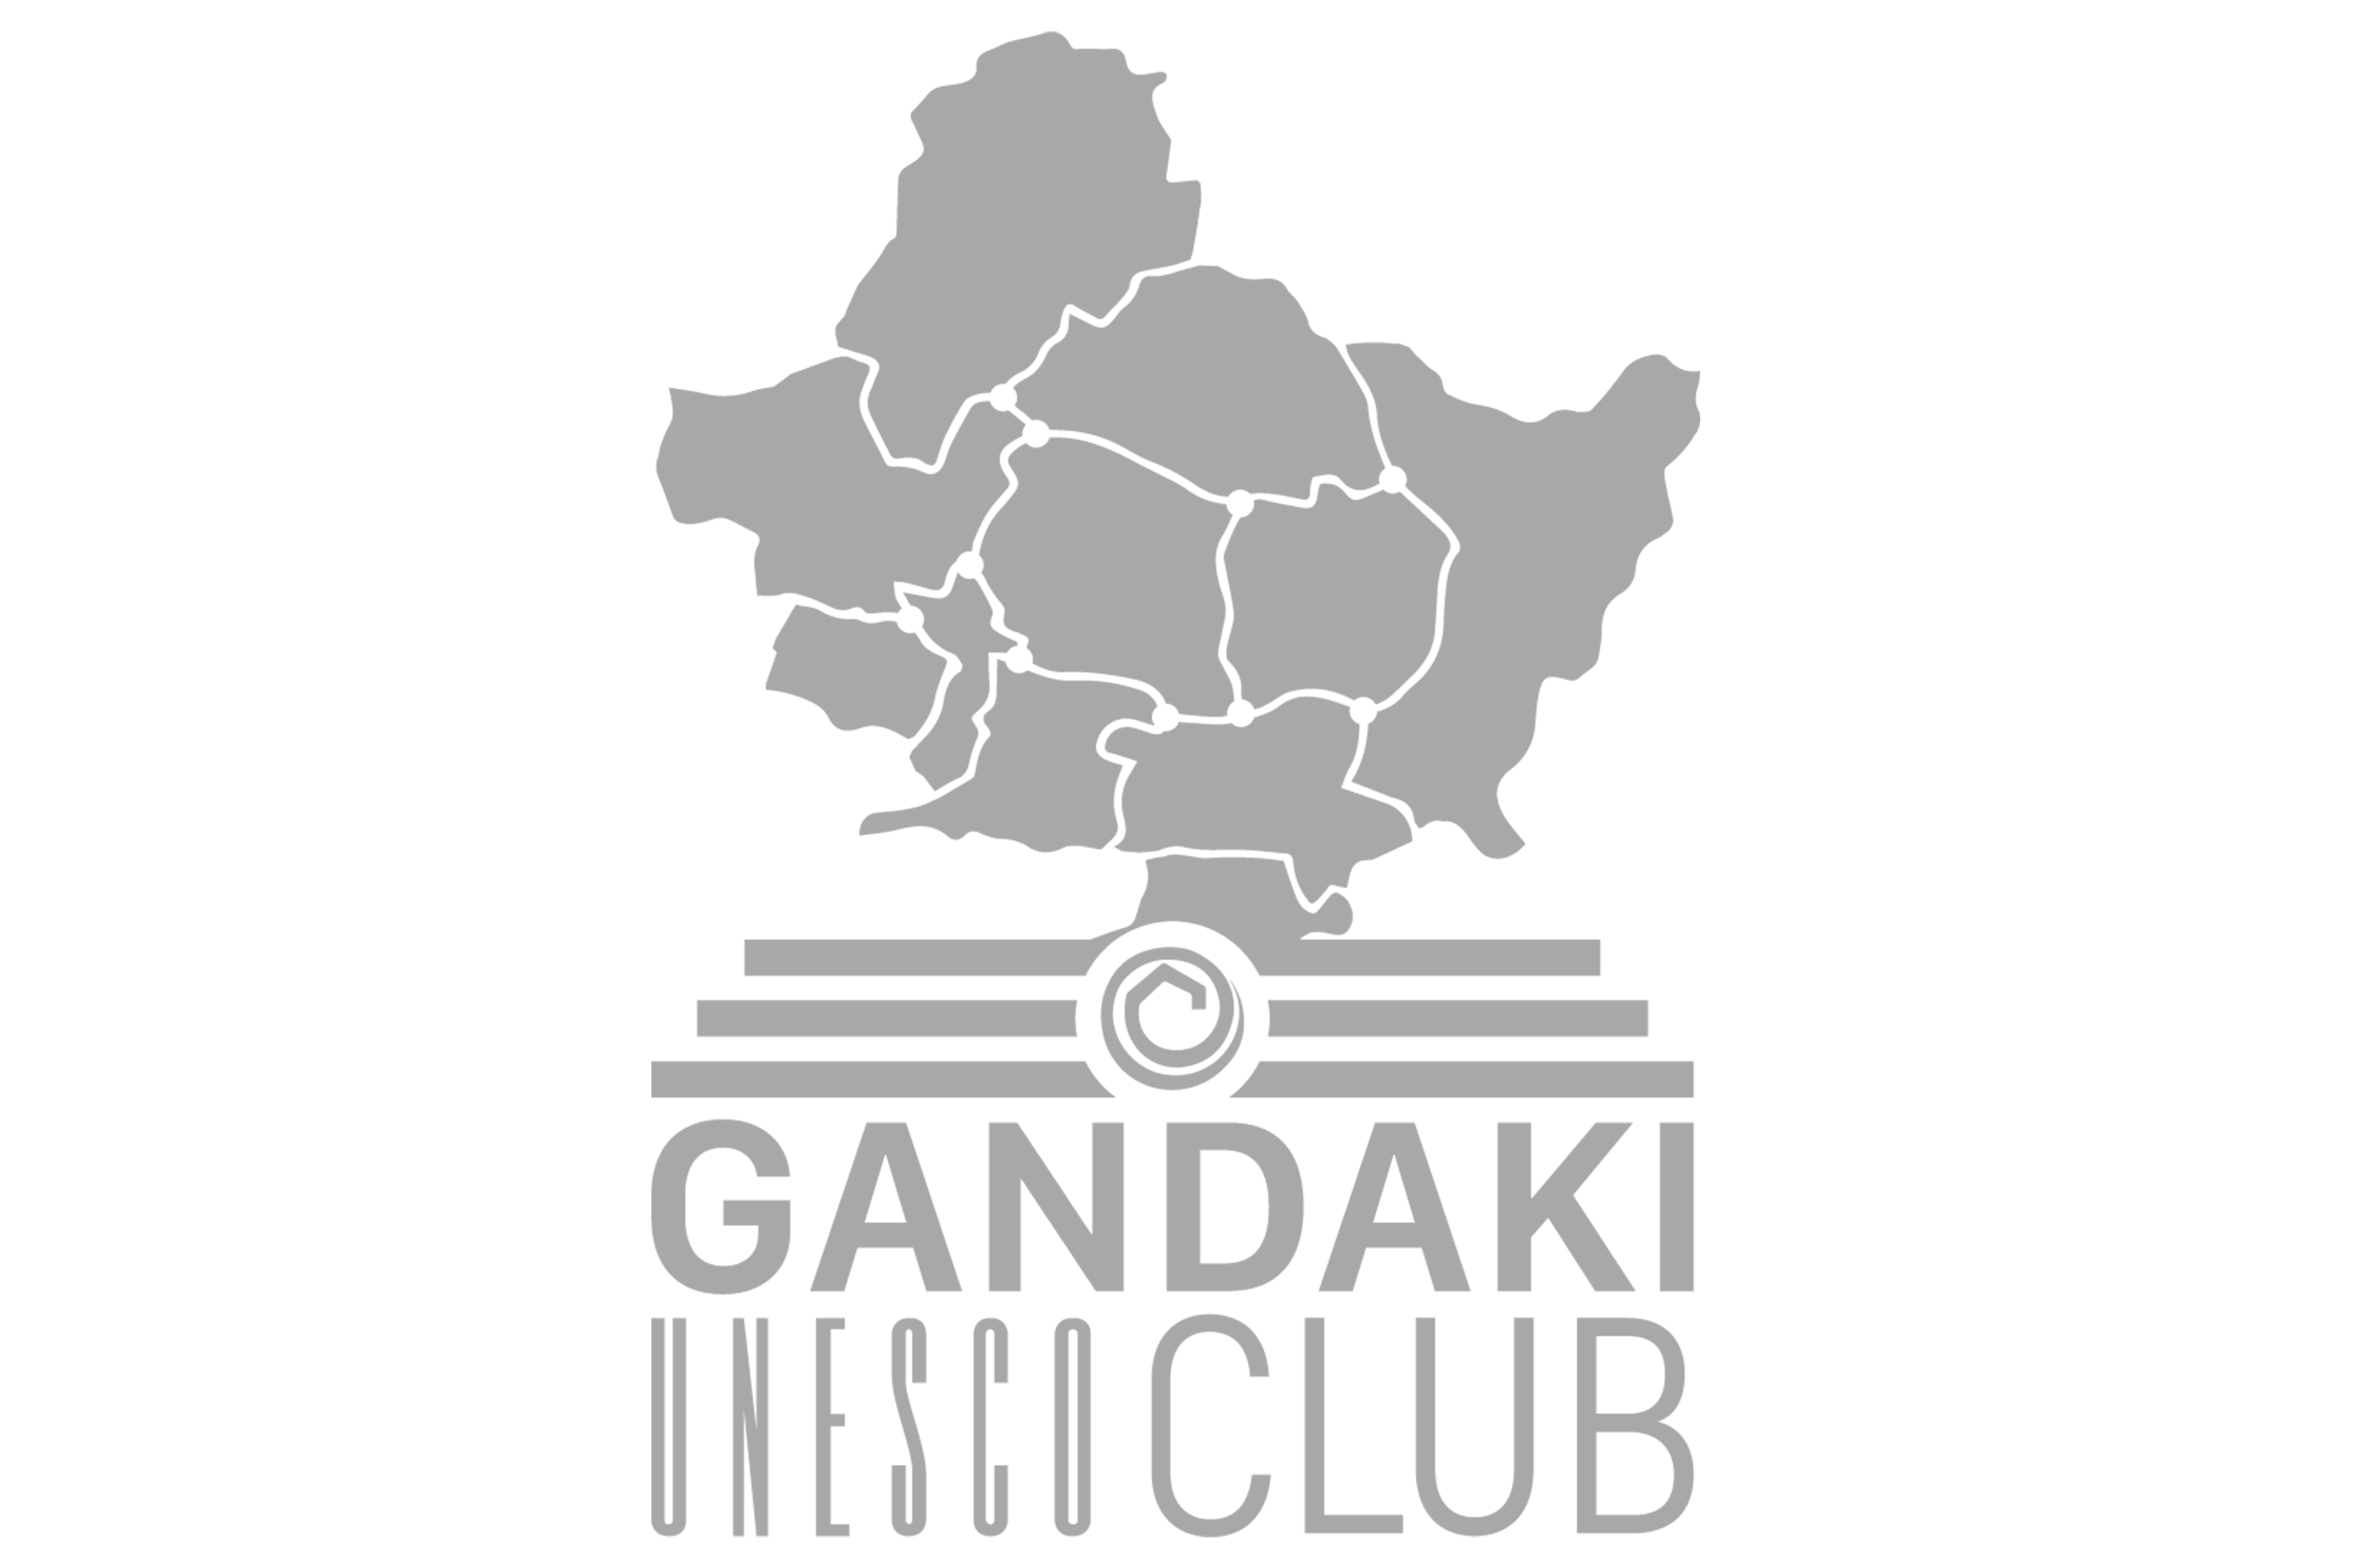 Gandaki Unesco Club